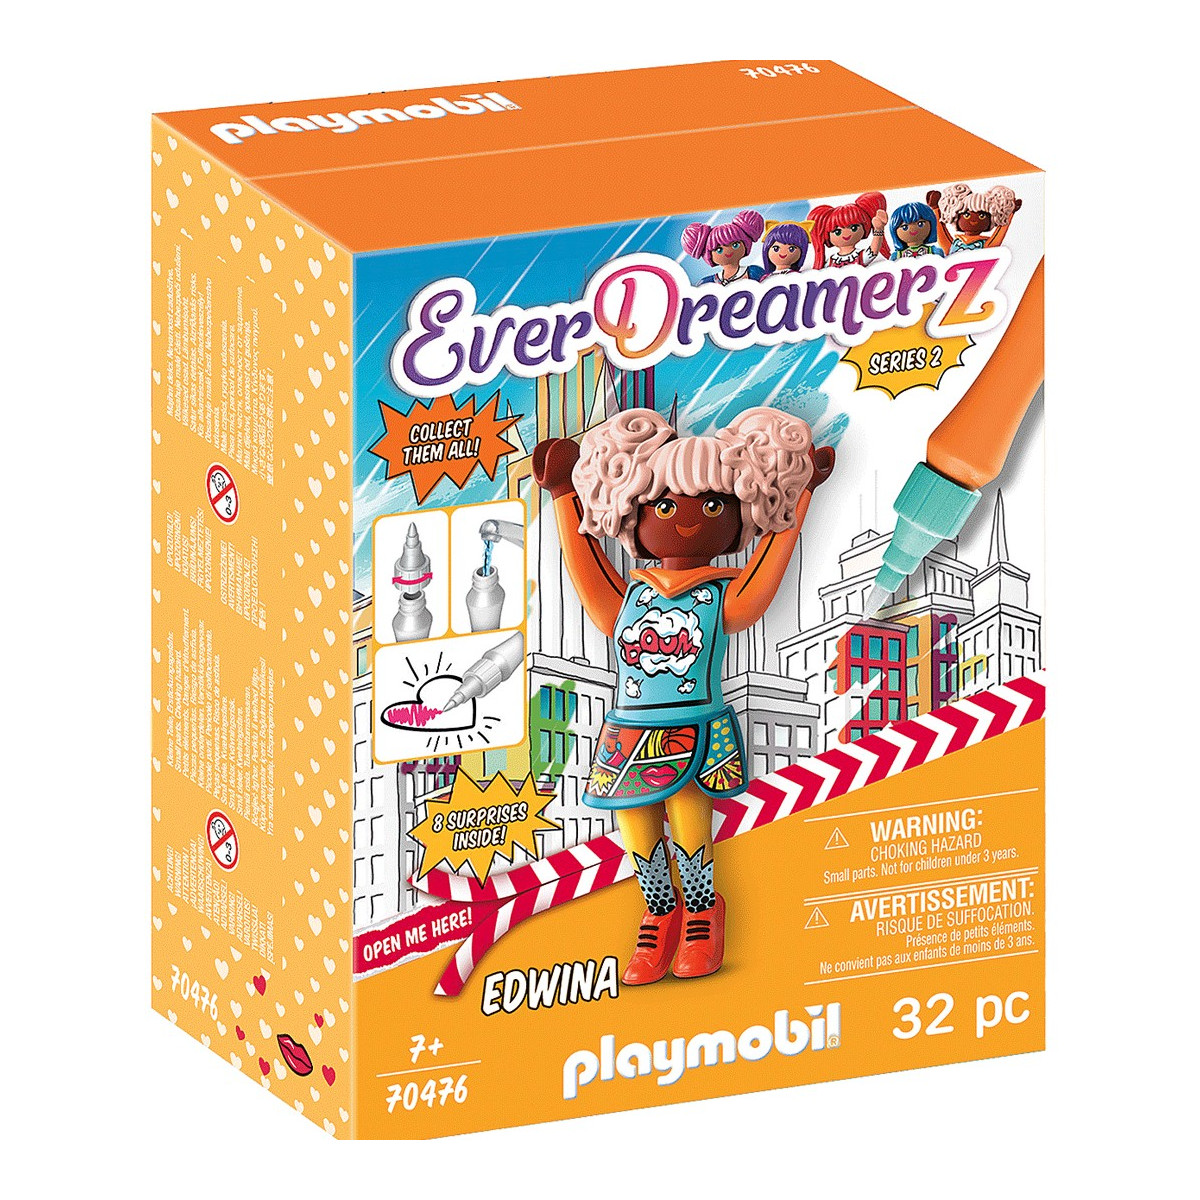 Everdreamerz playmobil edwina en caja con accesorios